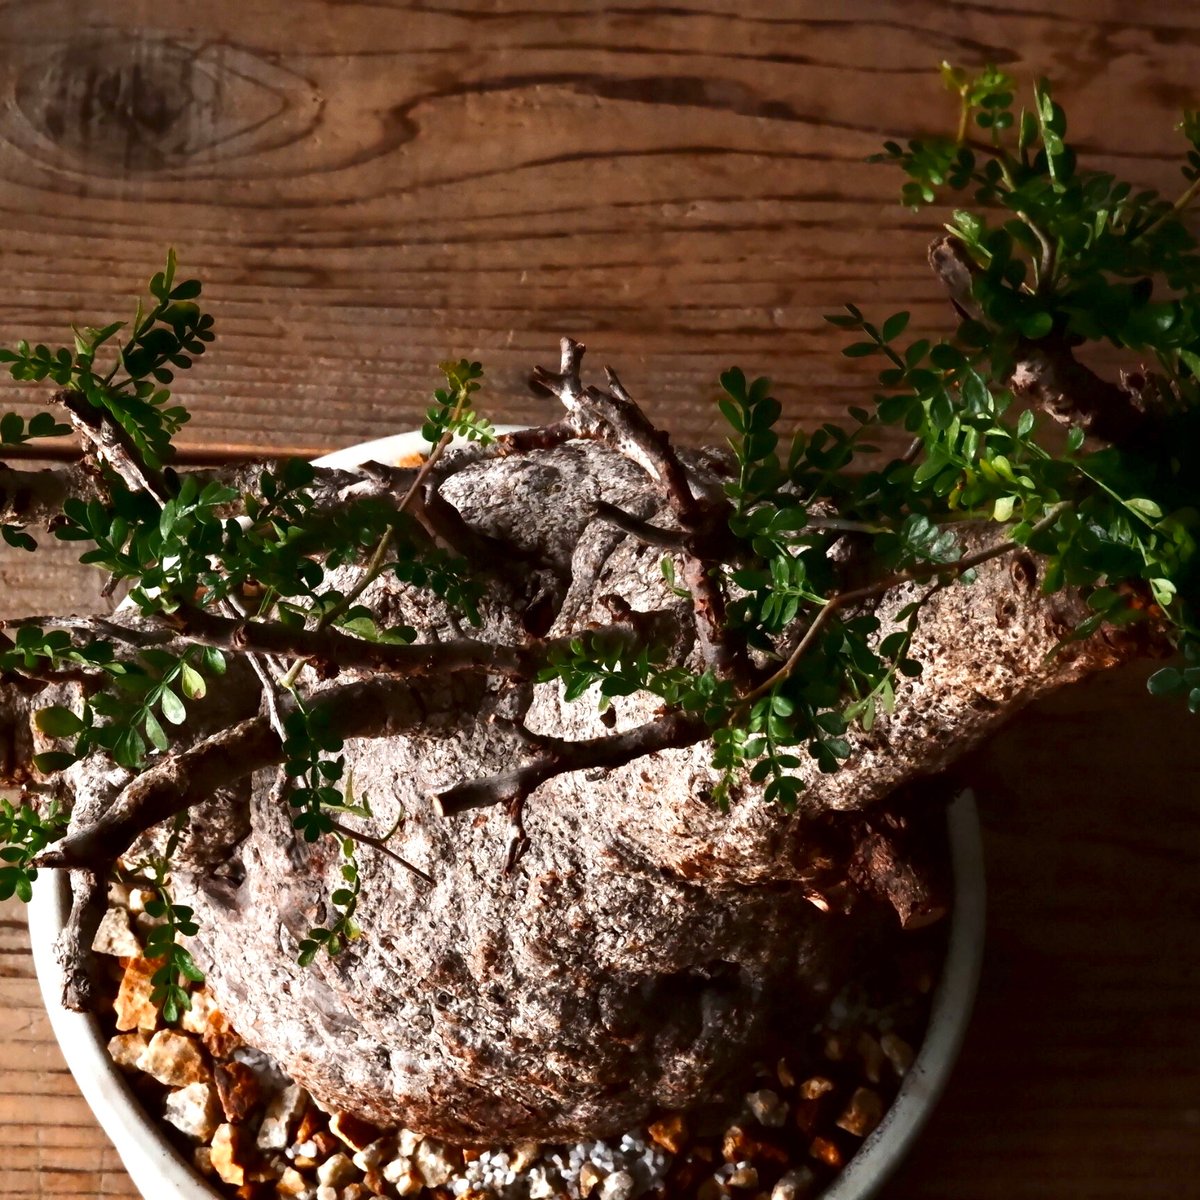 山下太 作家鉢 植木鉢 塊根植物 オペルクリカリア パキプス アガベ 